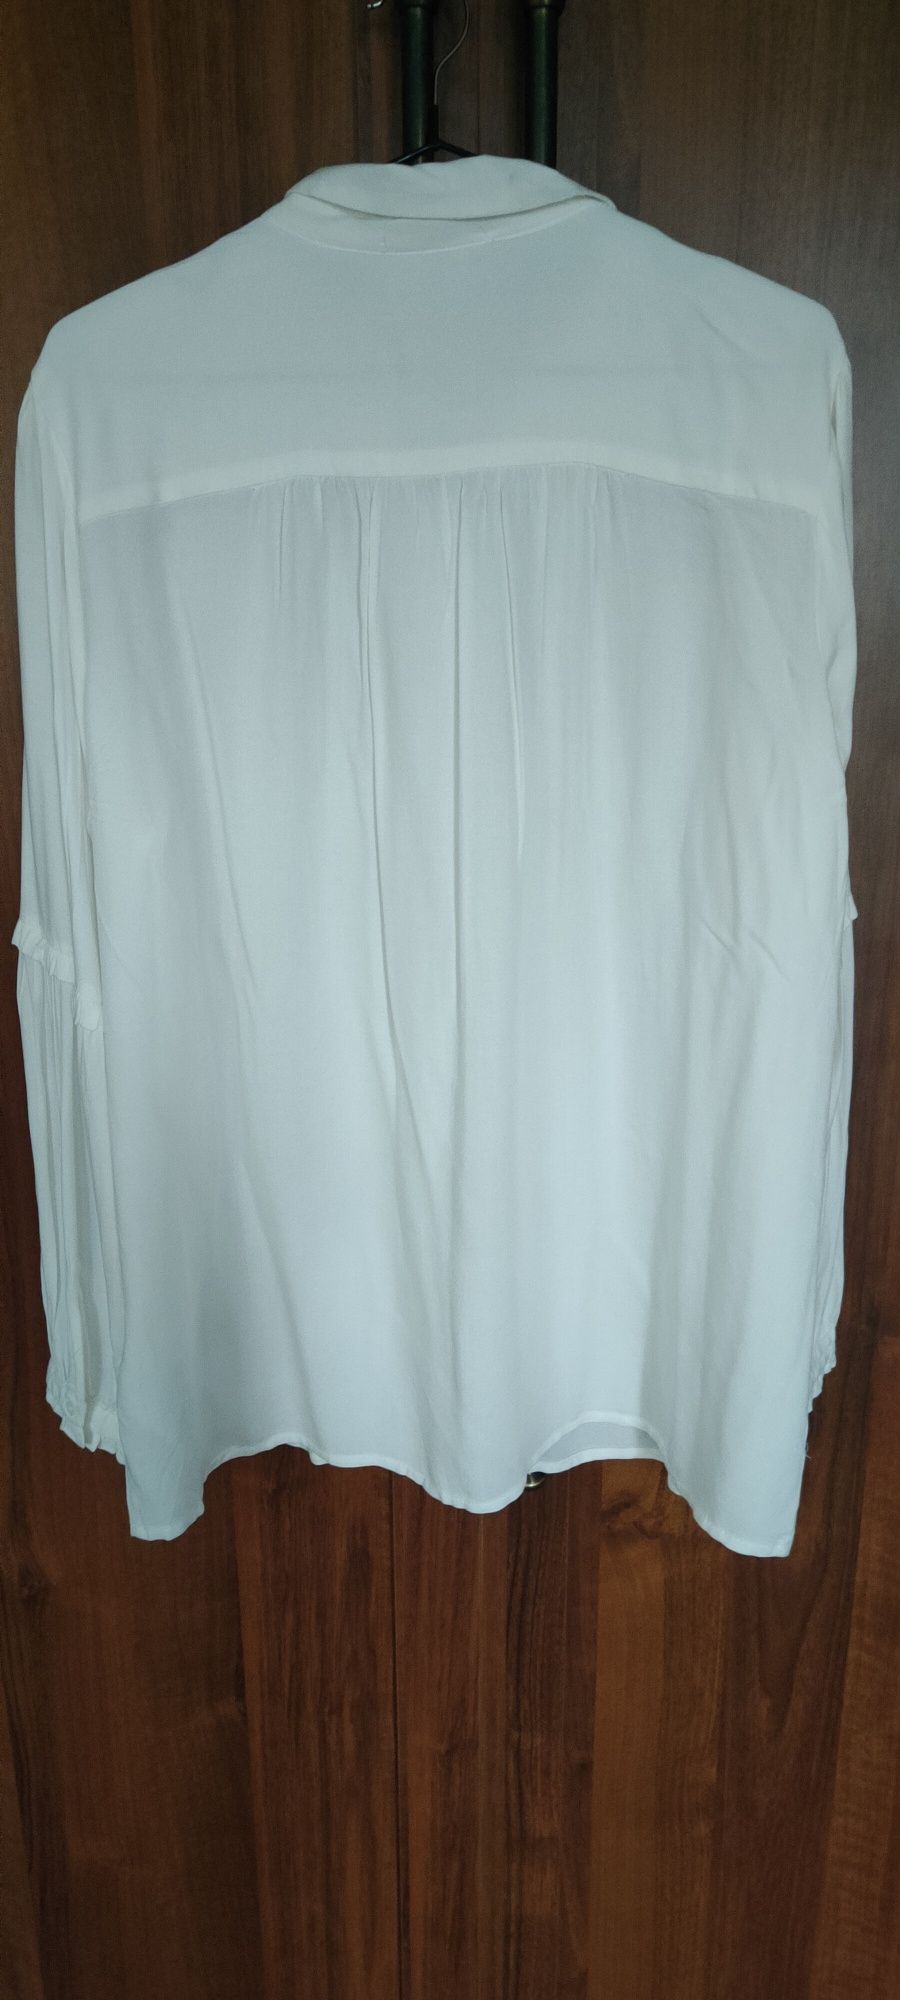 Bluzka koszulowa biała/śmietankowa r.44 esmara